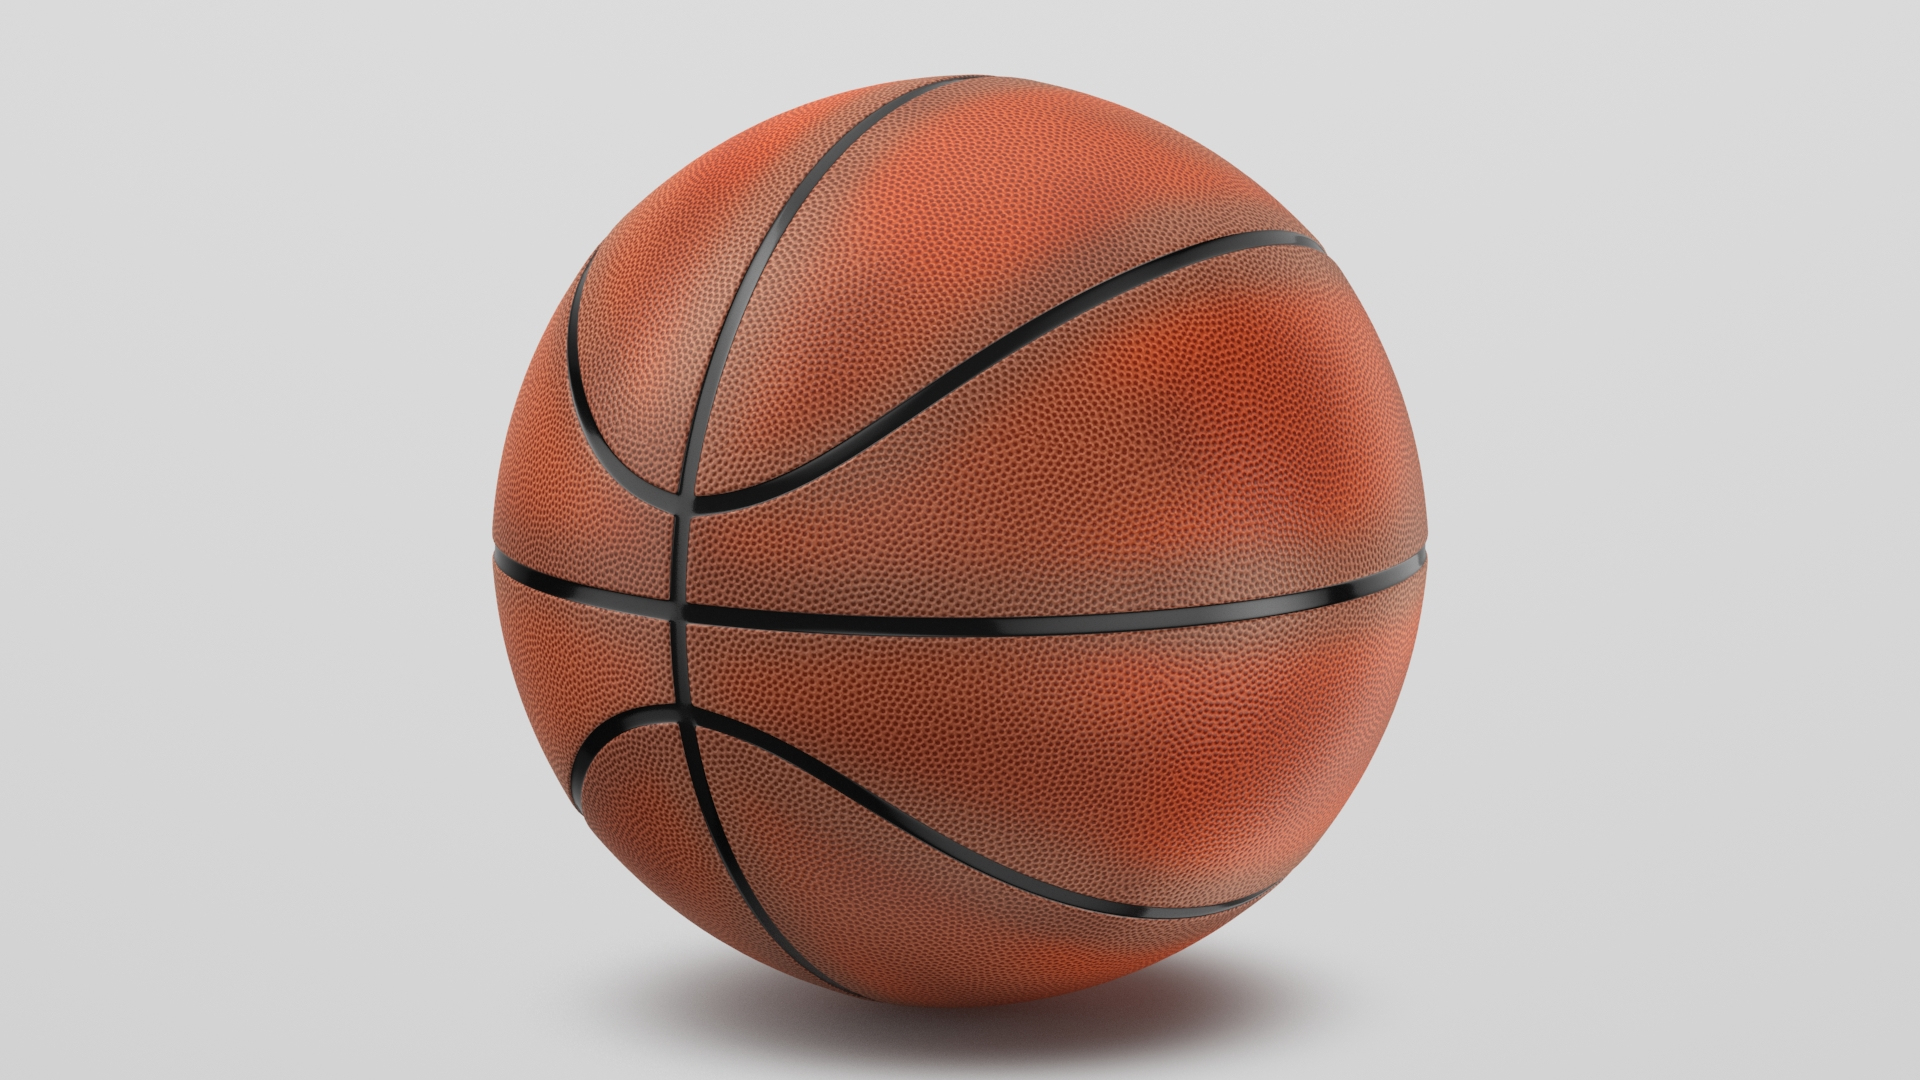 Спортивный мяч в баскетболе. Мяч баскетбольный 2-х слойный 372093. Футбольный баскетбольный волейбольный мячи. Огромный баскетбольный мяч. Мячи для волейбола, баскетбола.